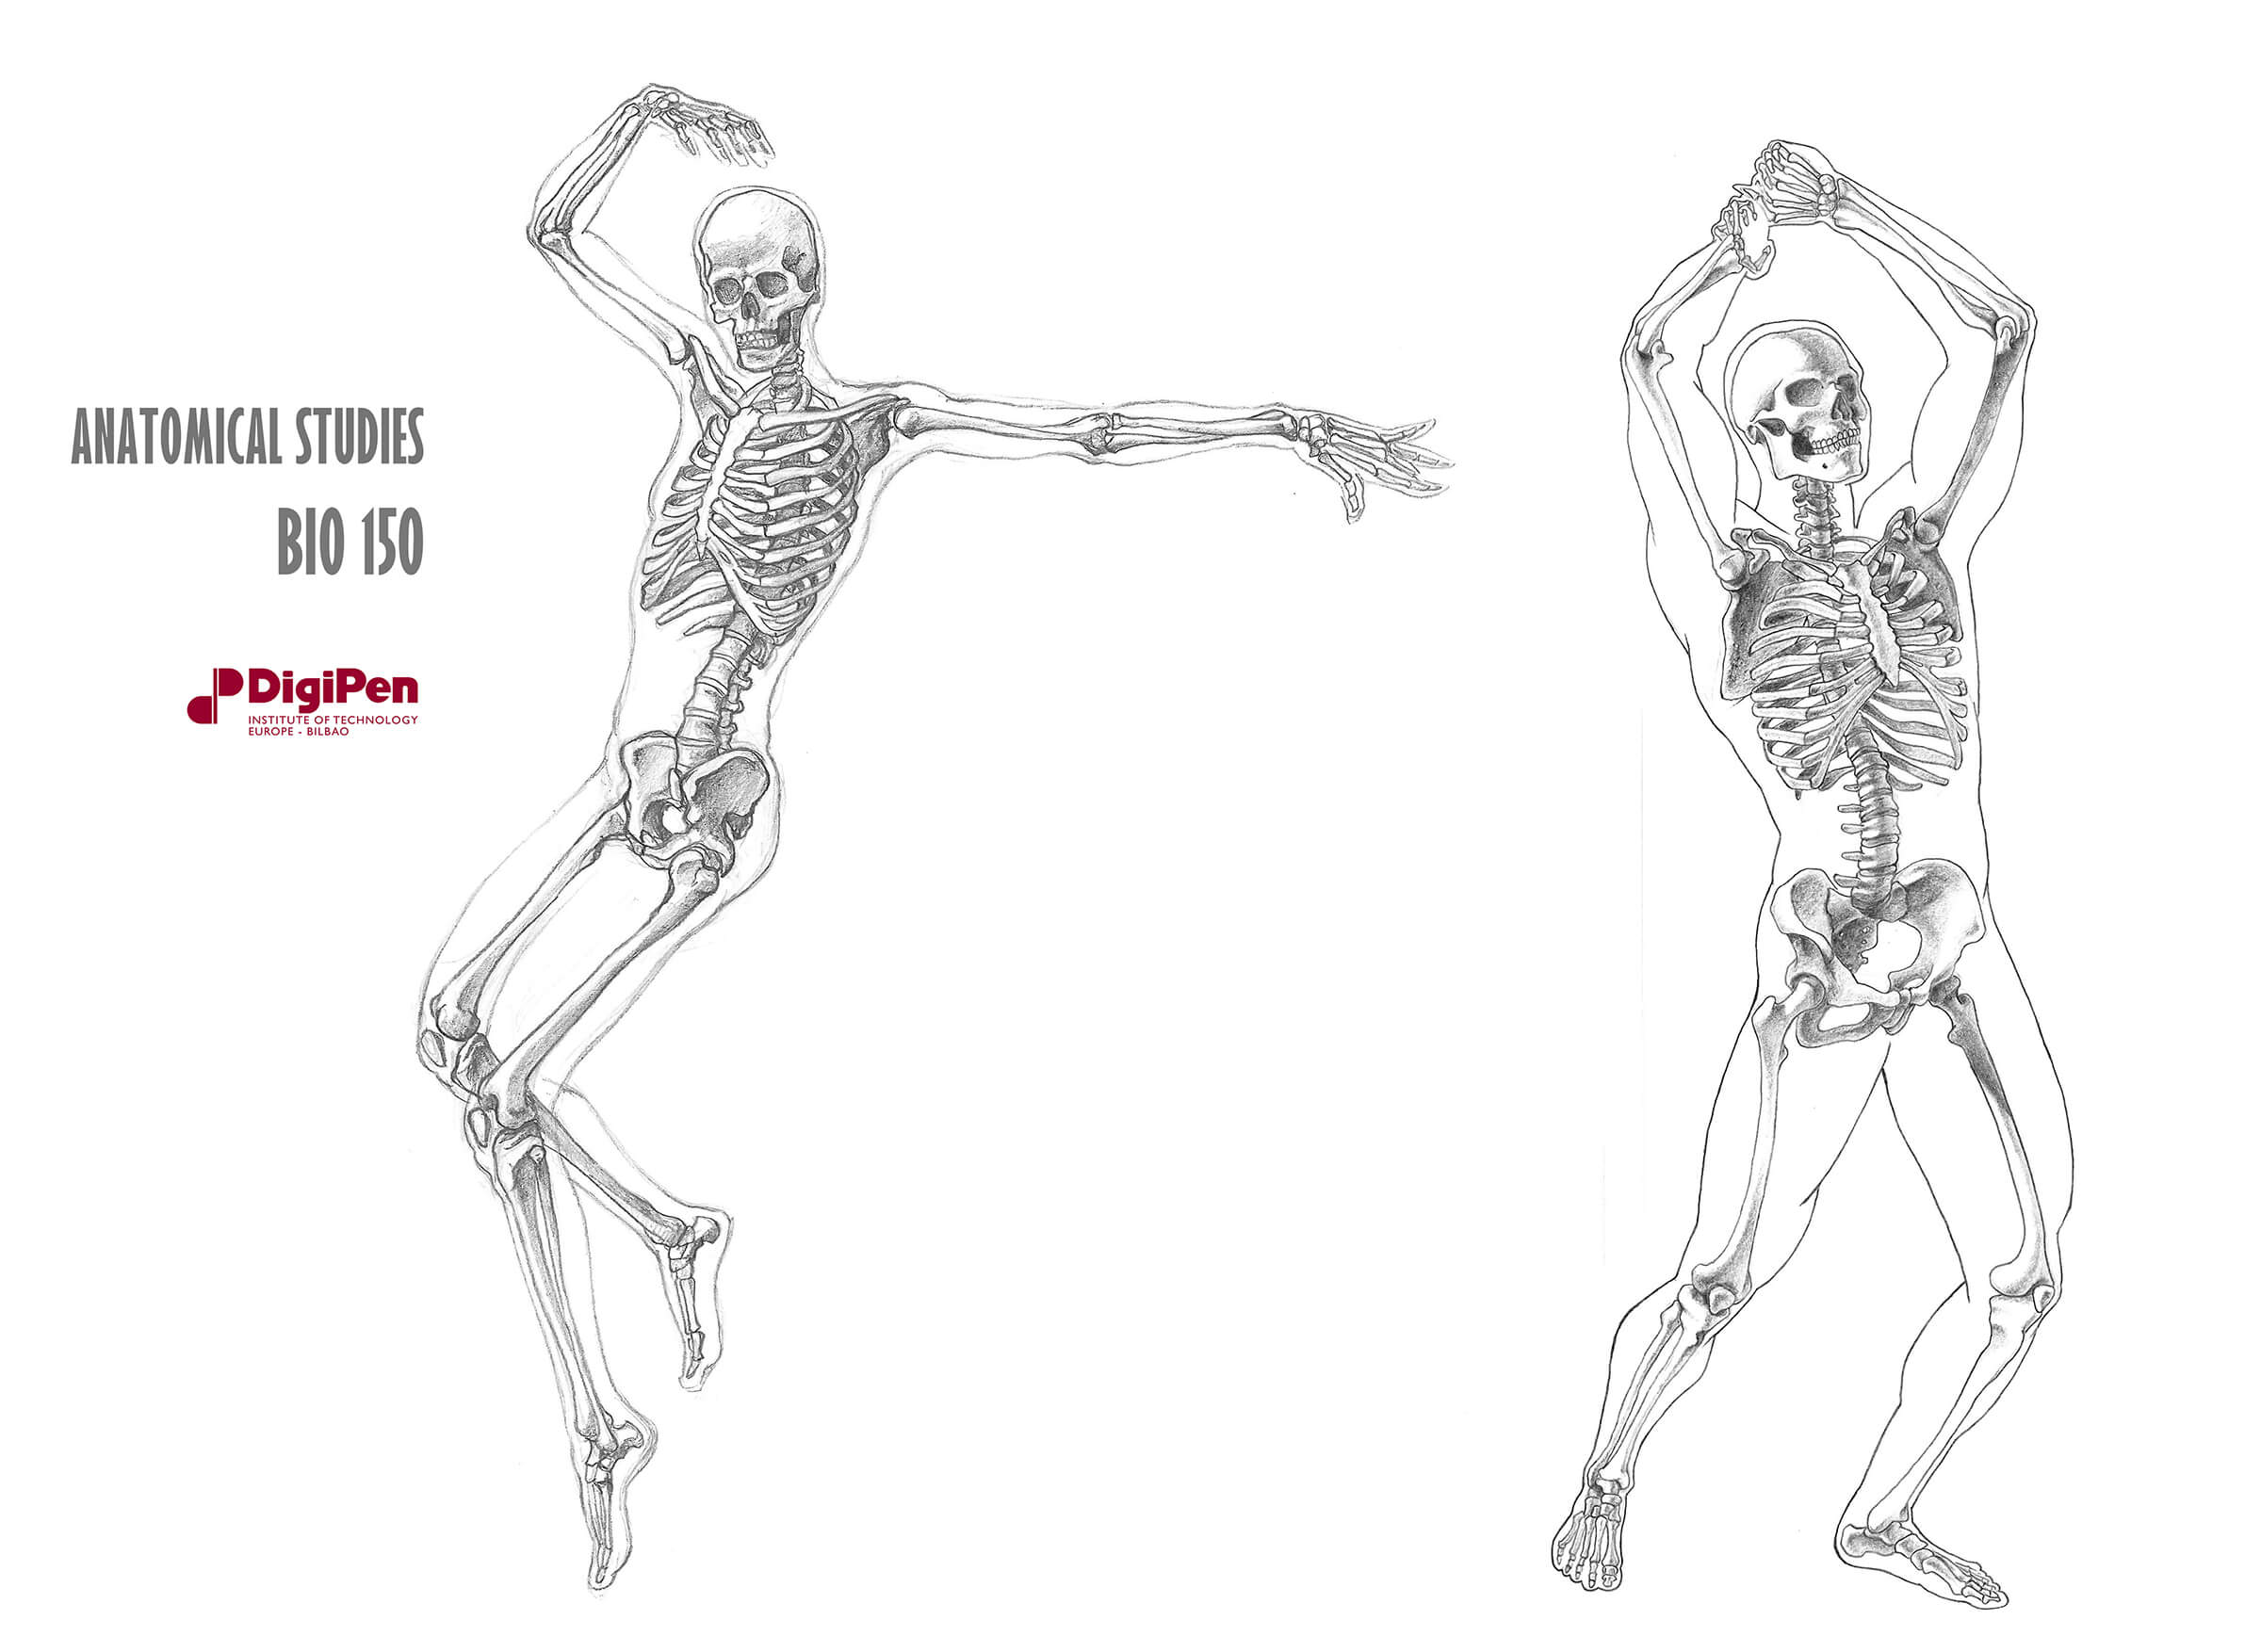 Bocetos anatómicos en blanco y negro de dos esqueletos humanos, uno en una pose de baile y el otro haciendo la pantomima de levantar un hacha.